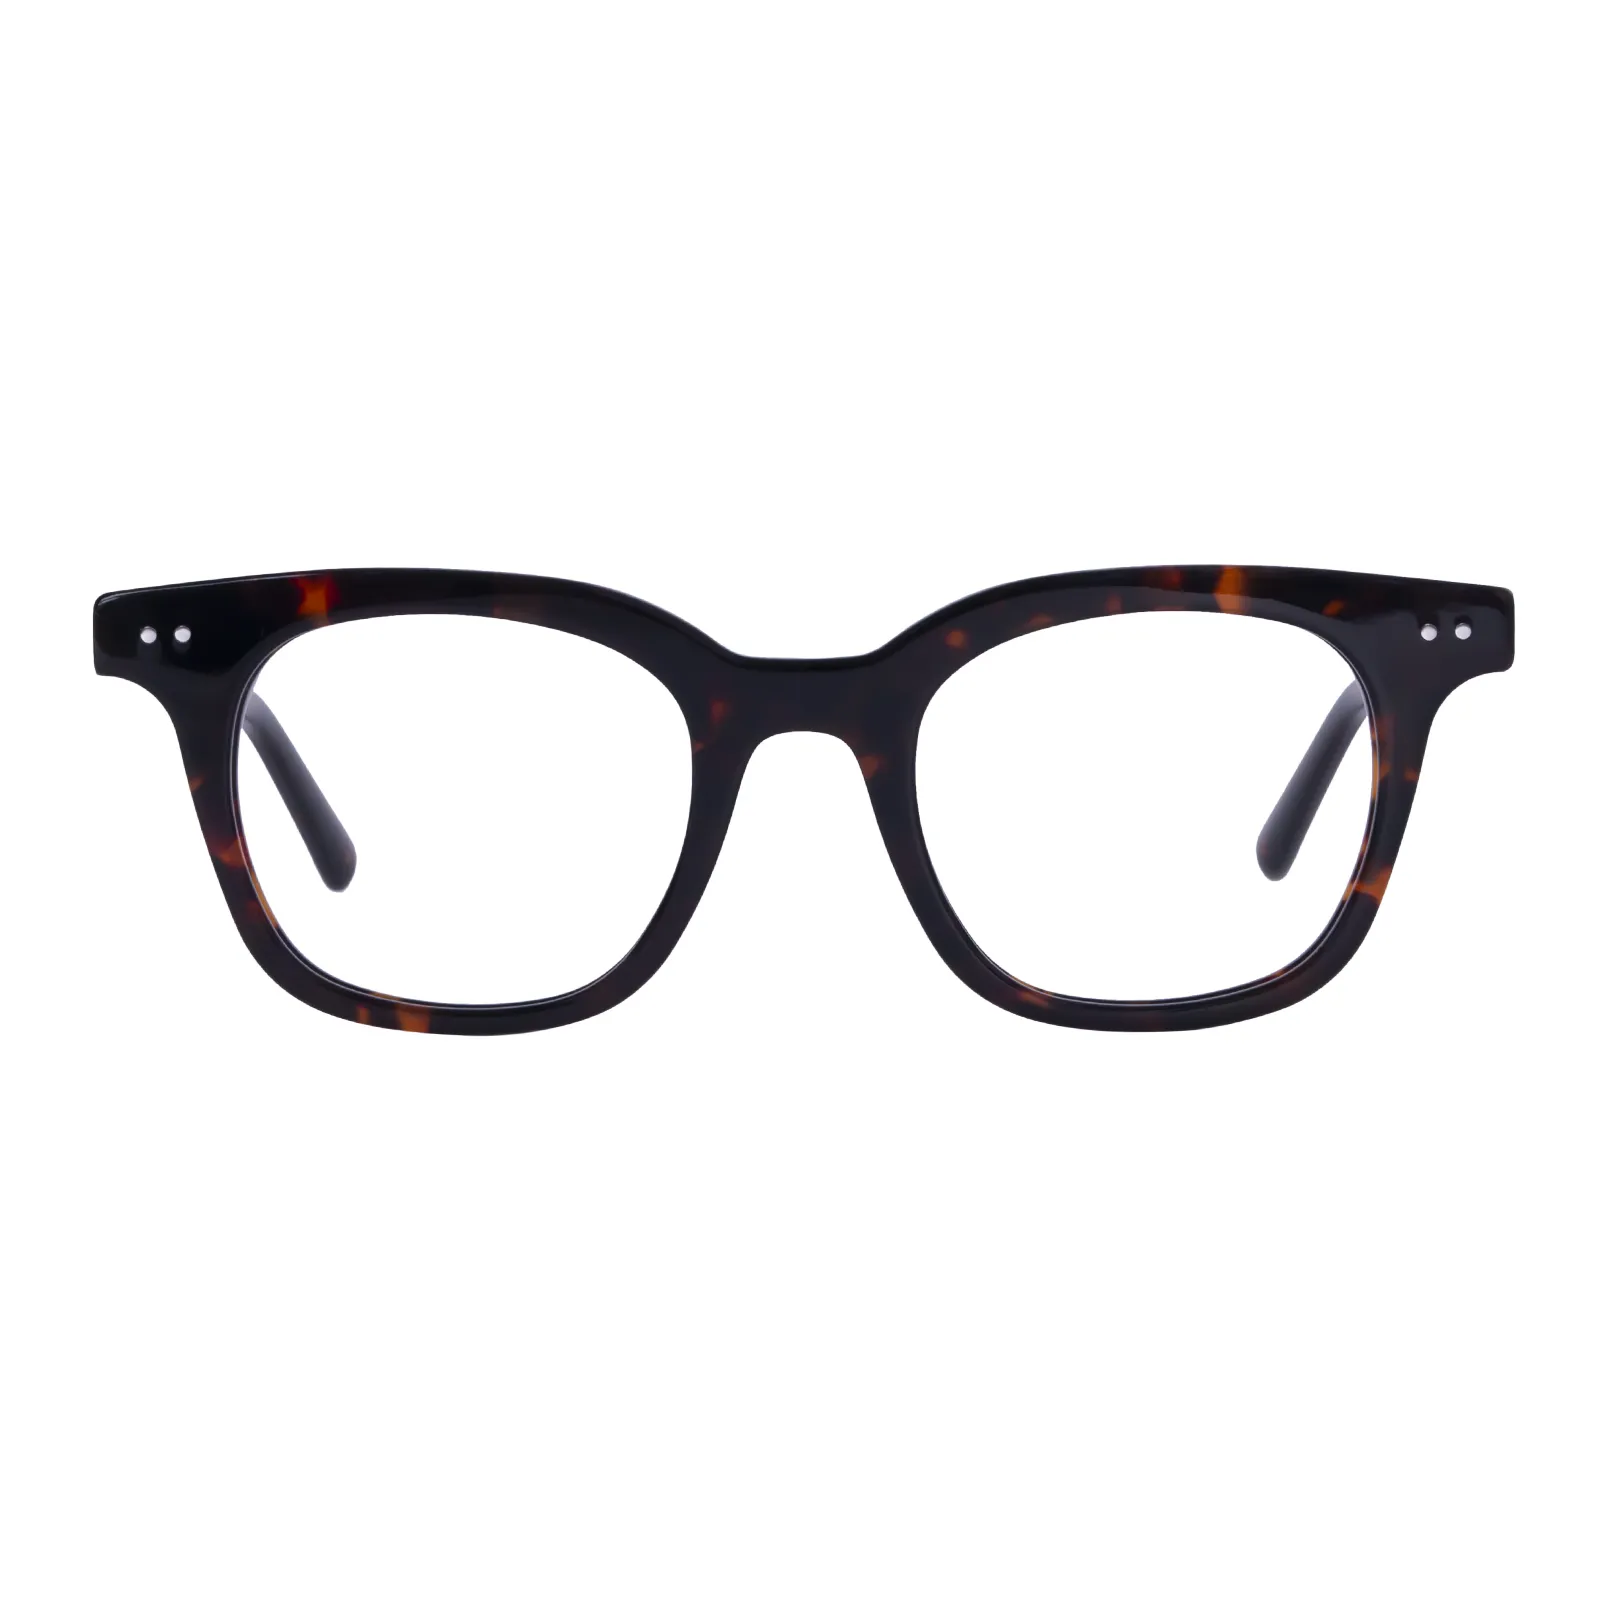 Samson - Square Tortoisehell Glasses for Women